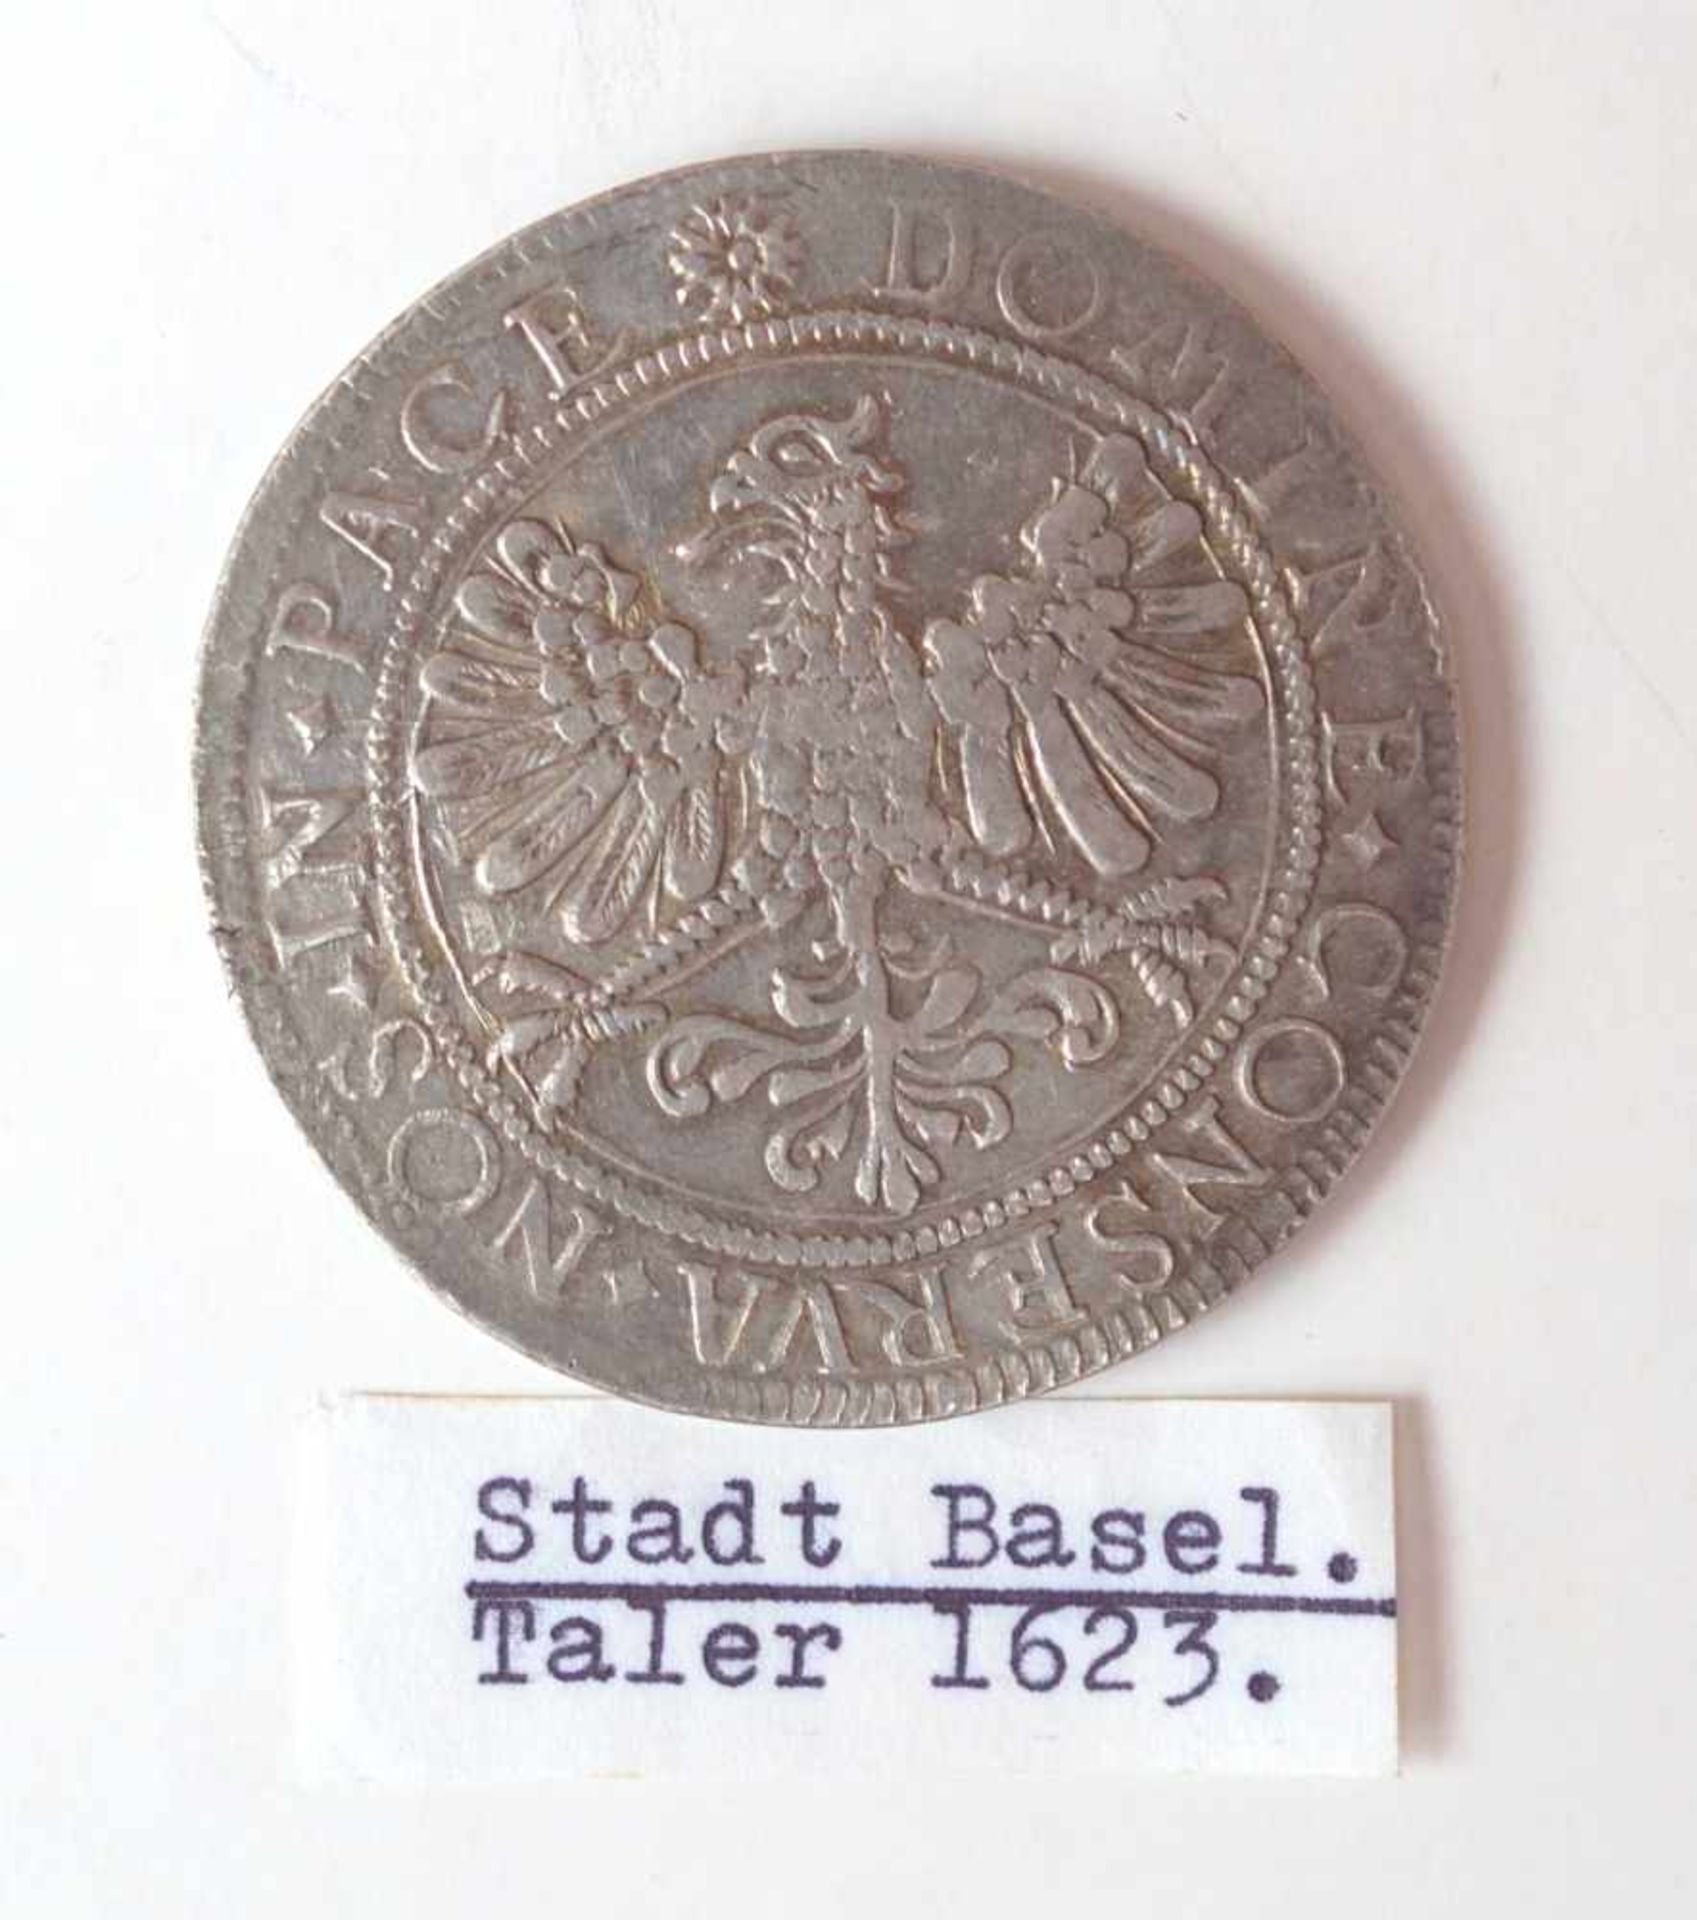 Stadt Basel, Taler von 1623VS: nach links gerichteter schwarzer Krummstab (Baselstab) als Wappen der